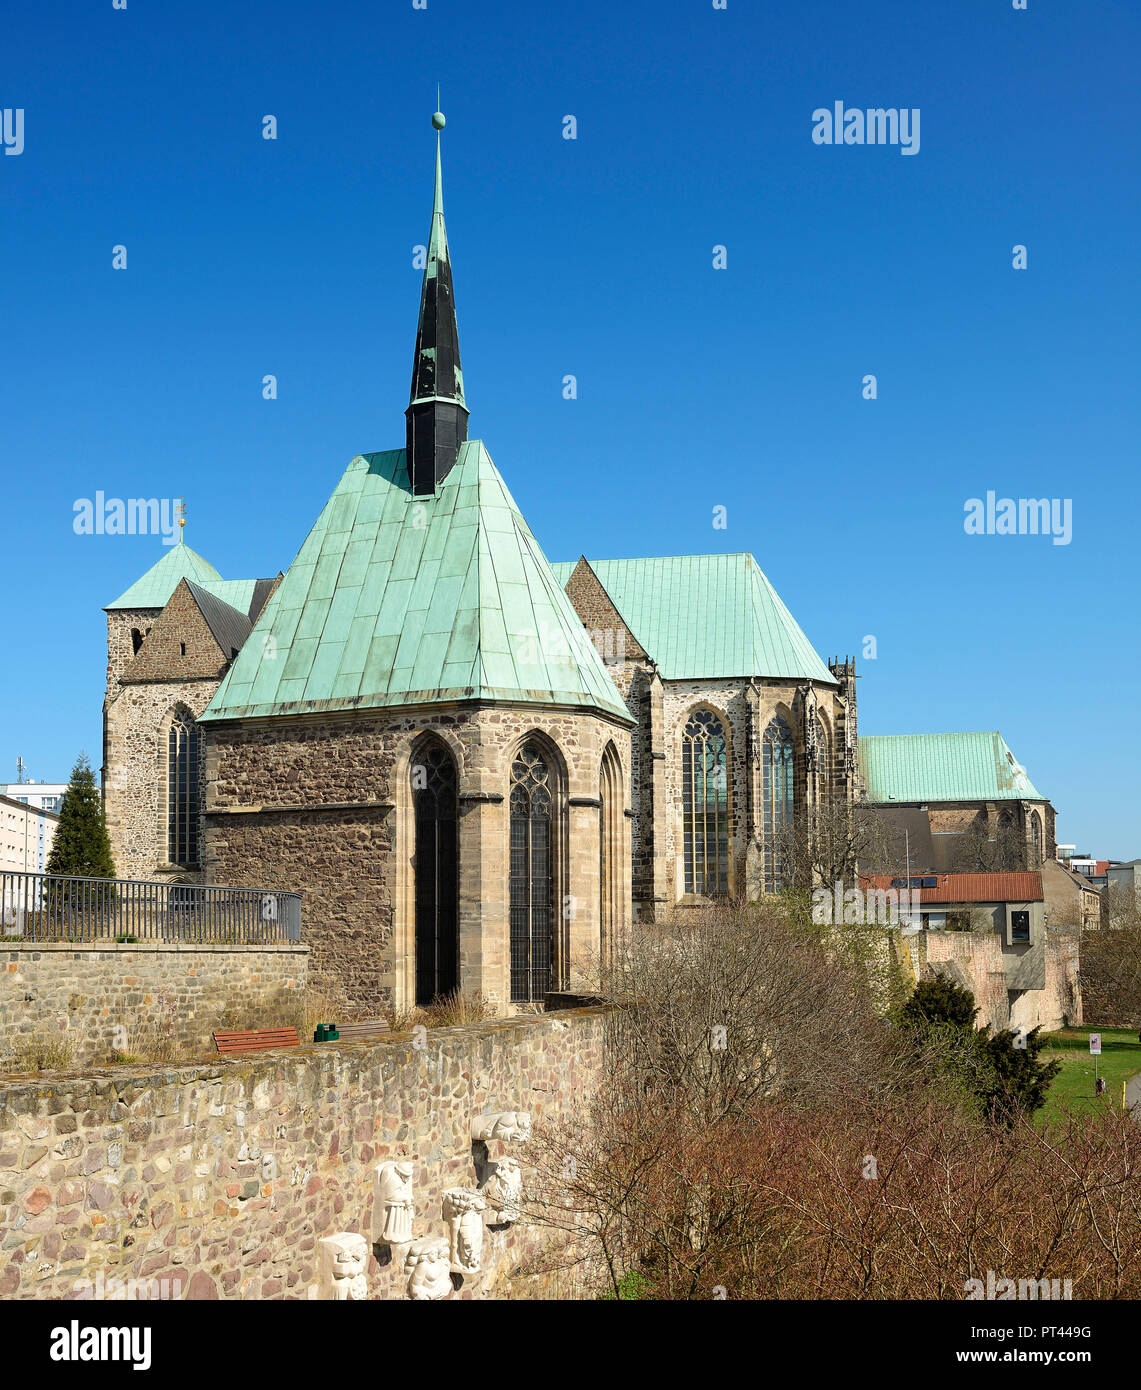 Alemania, en el Estado federado de Sajonia-Anhalt, Magdeburgo, arquitectura gótica, y Wallonerkirche Petrikirche Magdalenenkapelle, cerca de la muralla de la ciudad Foto de stock